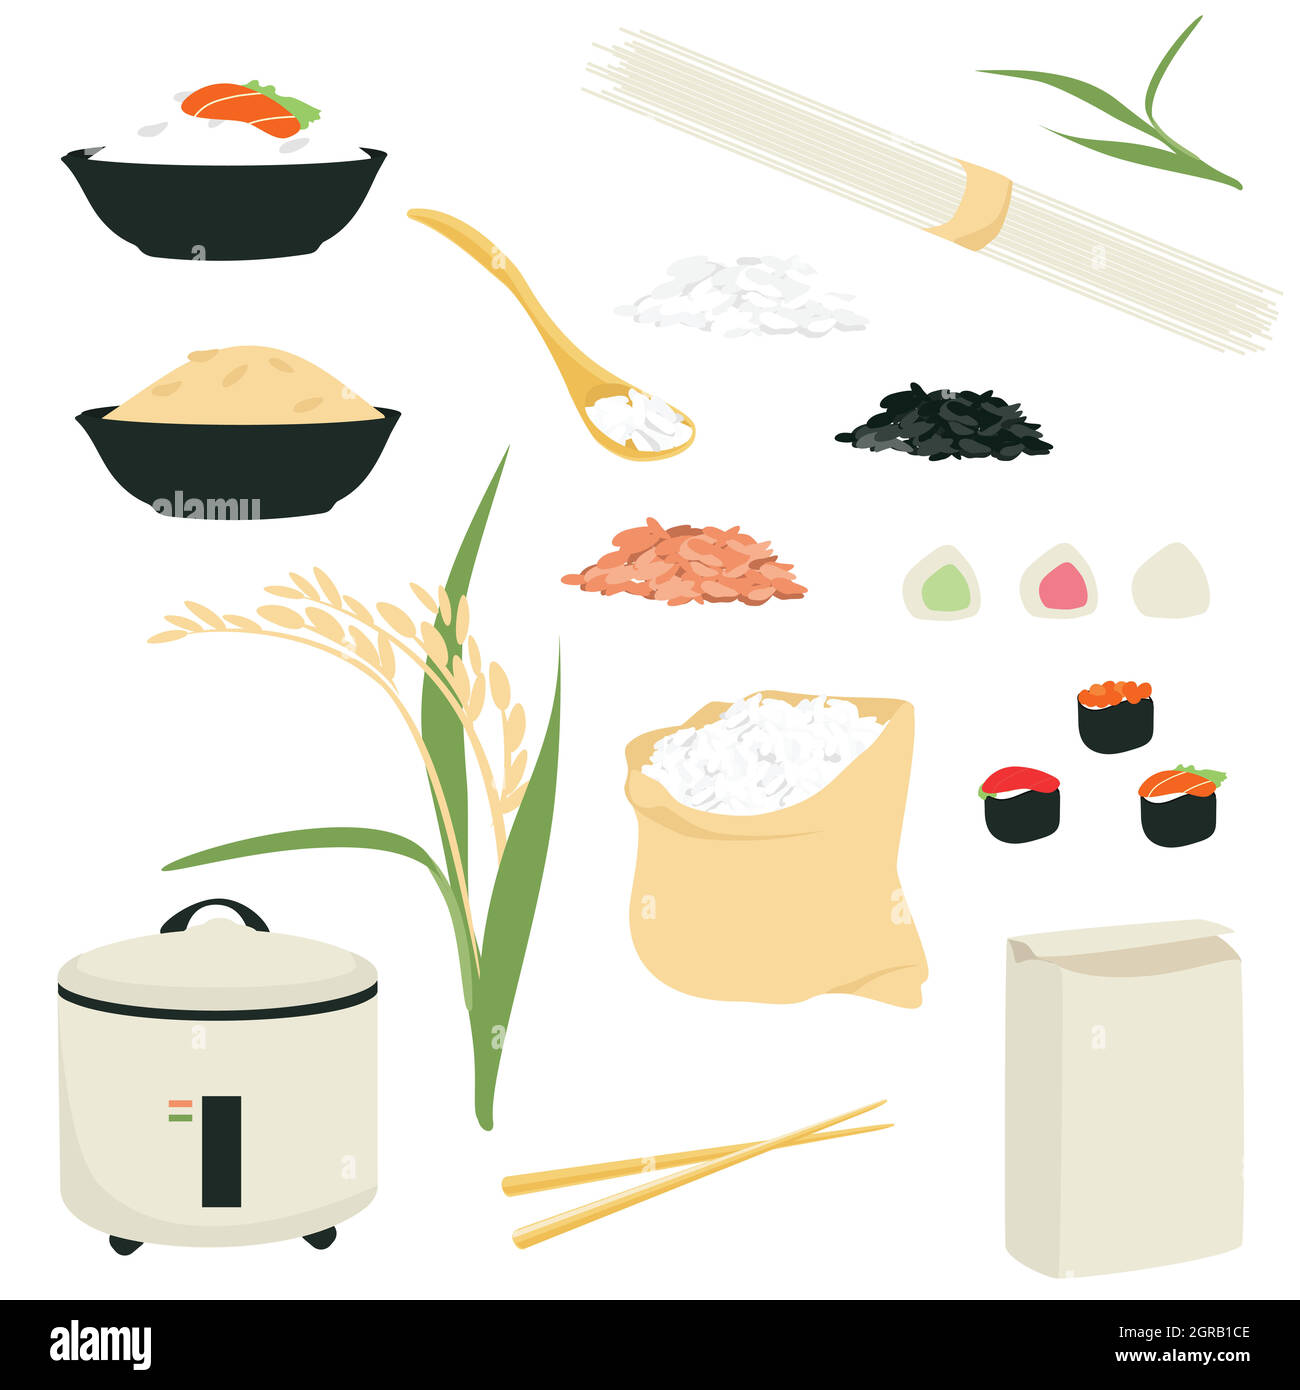 Symbolsatz für Reiskorrifiken. Sammlung von Ikonen der Reisprodukte: Nudeln,  Sushi, Mochi Reiskocher, Mehl. Reissorte, Pflanzen Plantage und isoliert  pro Stock-Vektorgrafik - Alamy